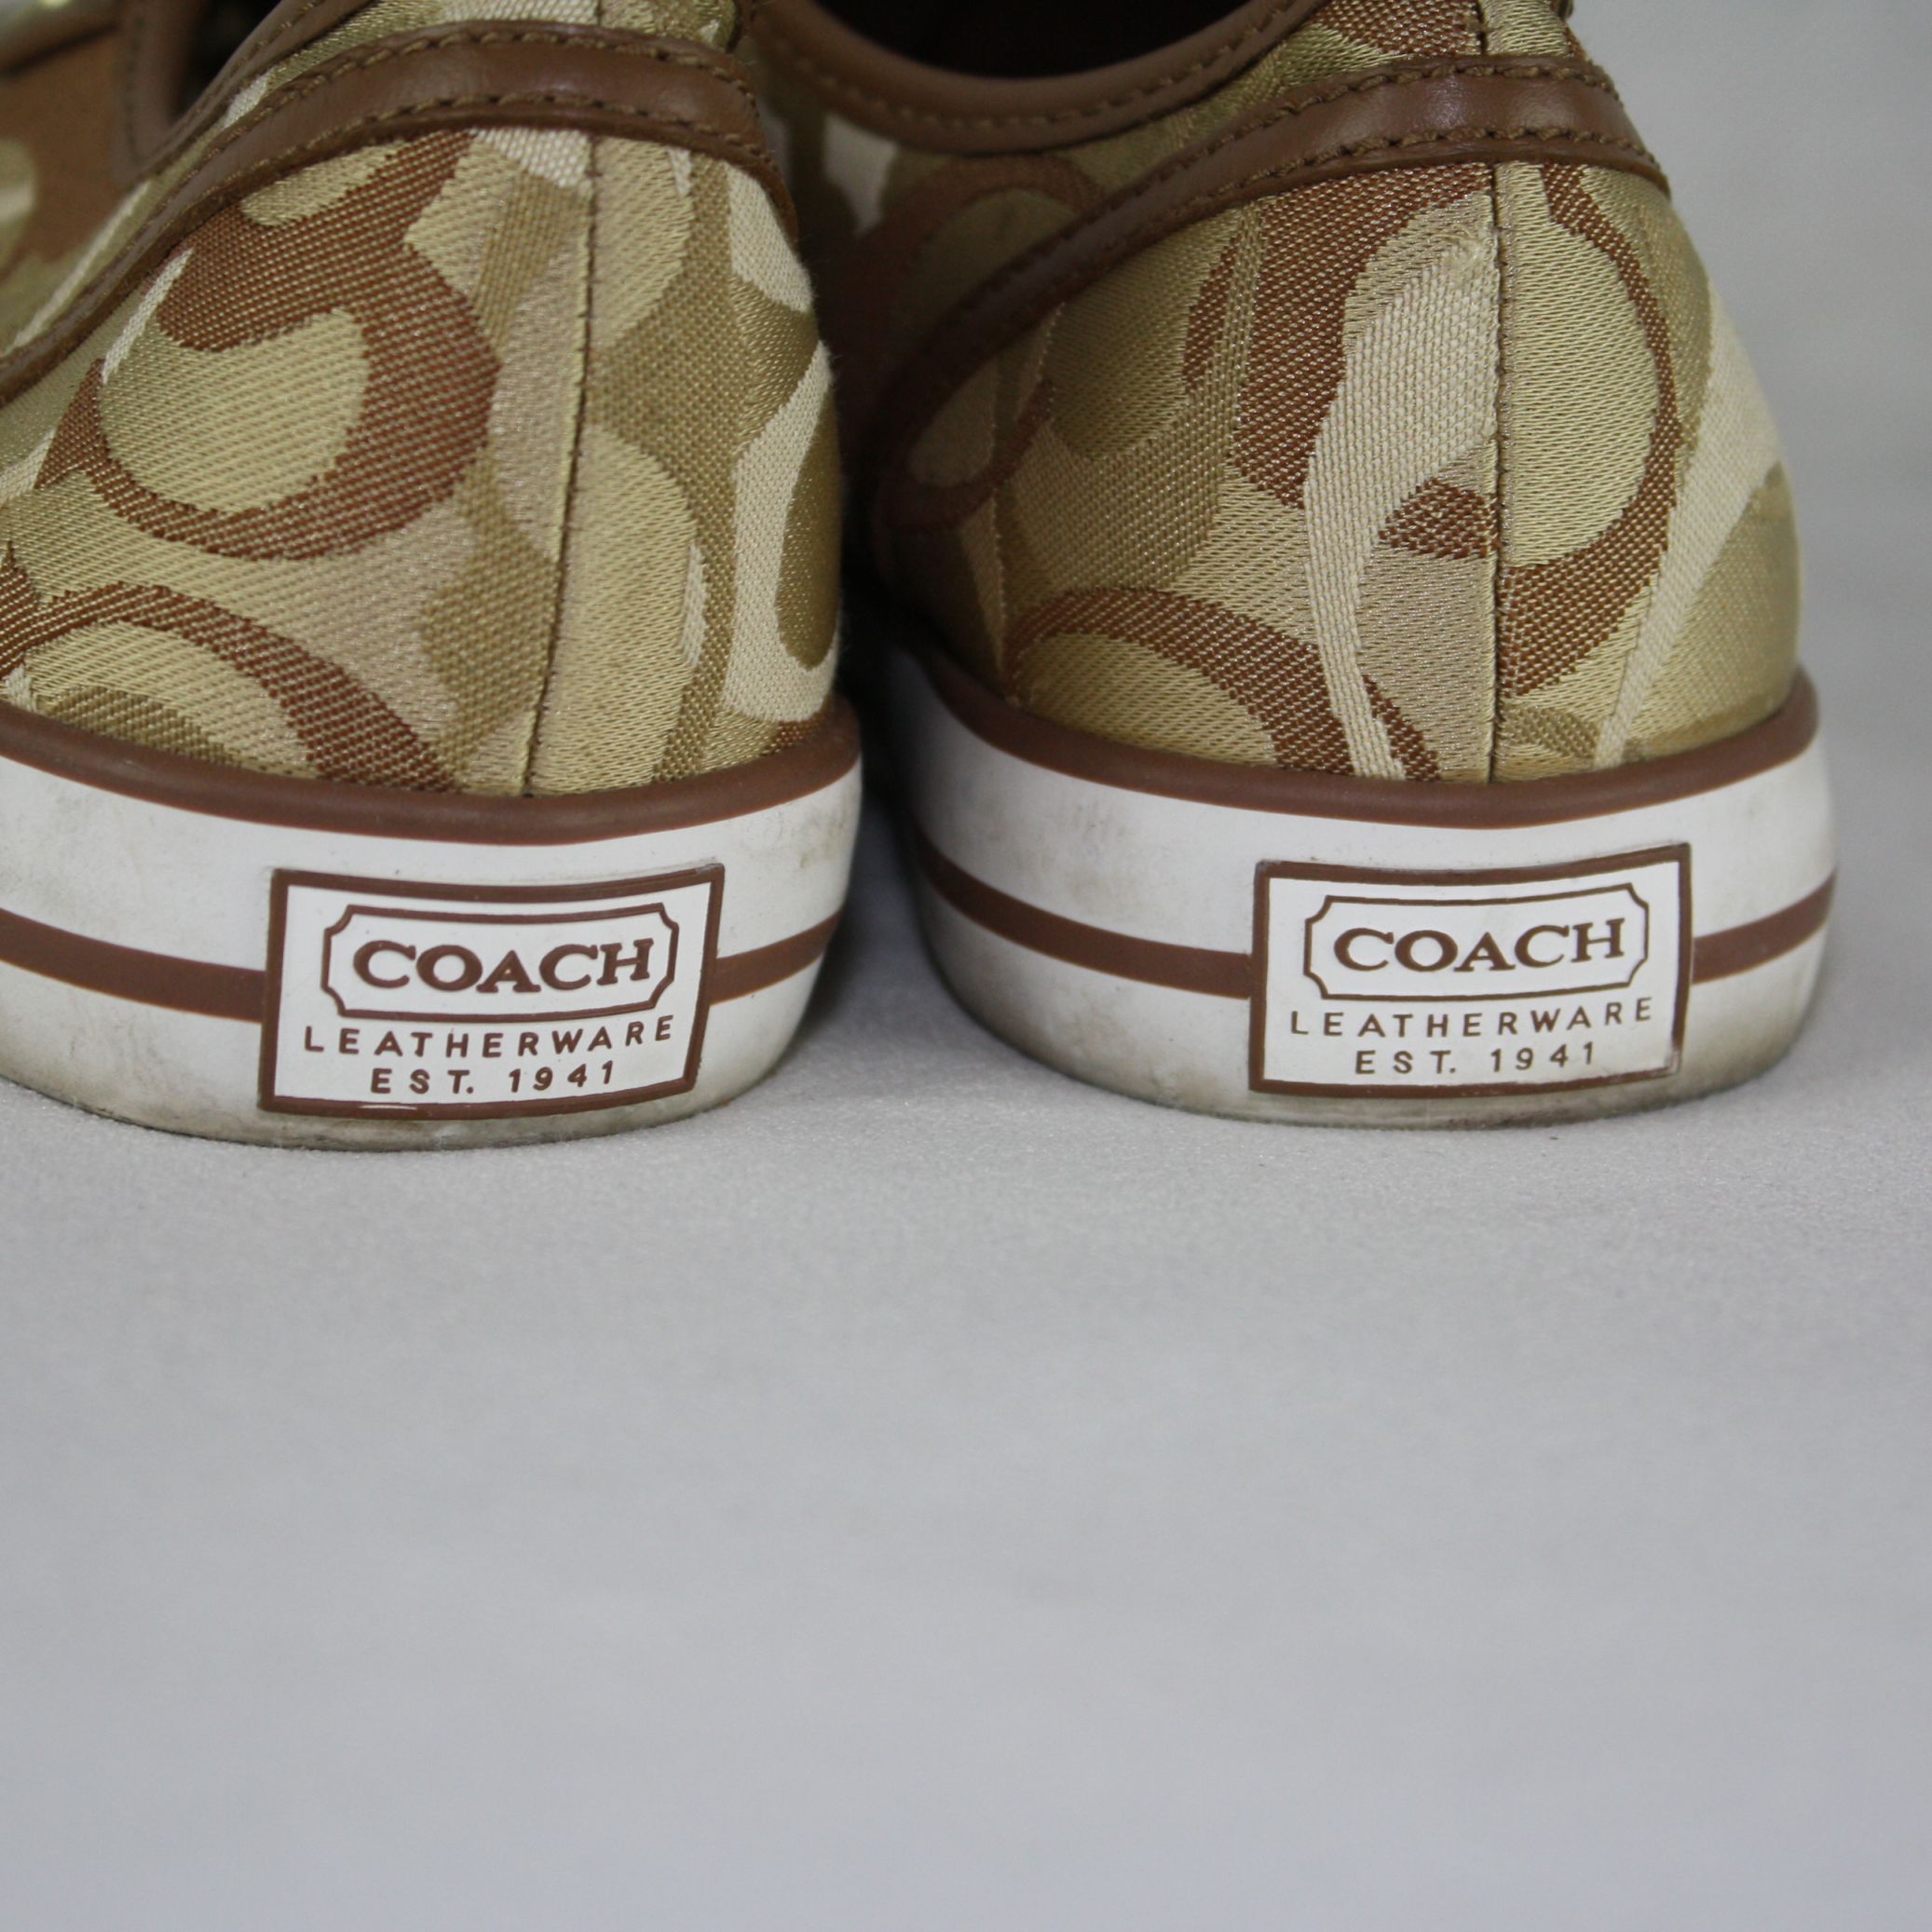 coach leatherware est 1941 shoes